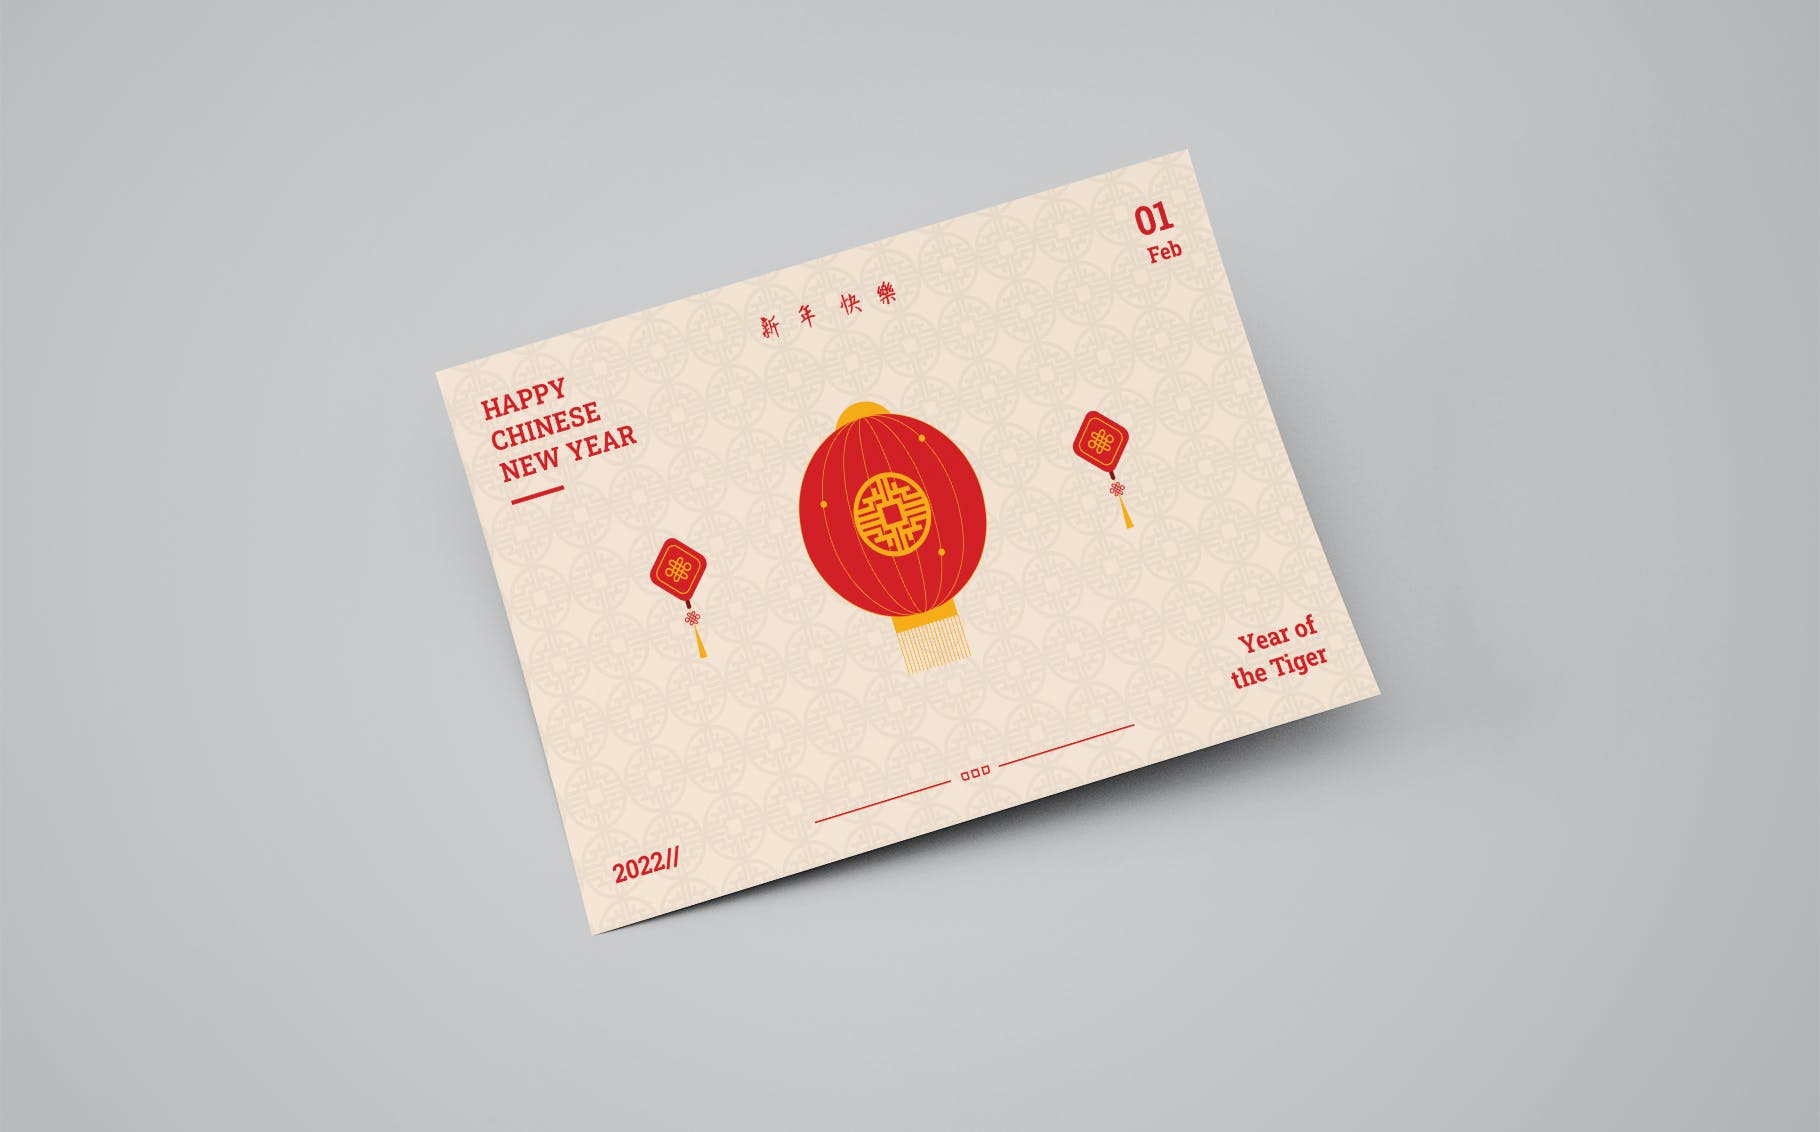 农历新年贺卡设计模板 Chinese New Year Greeting Card 设计素材 第3张